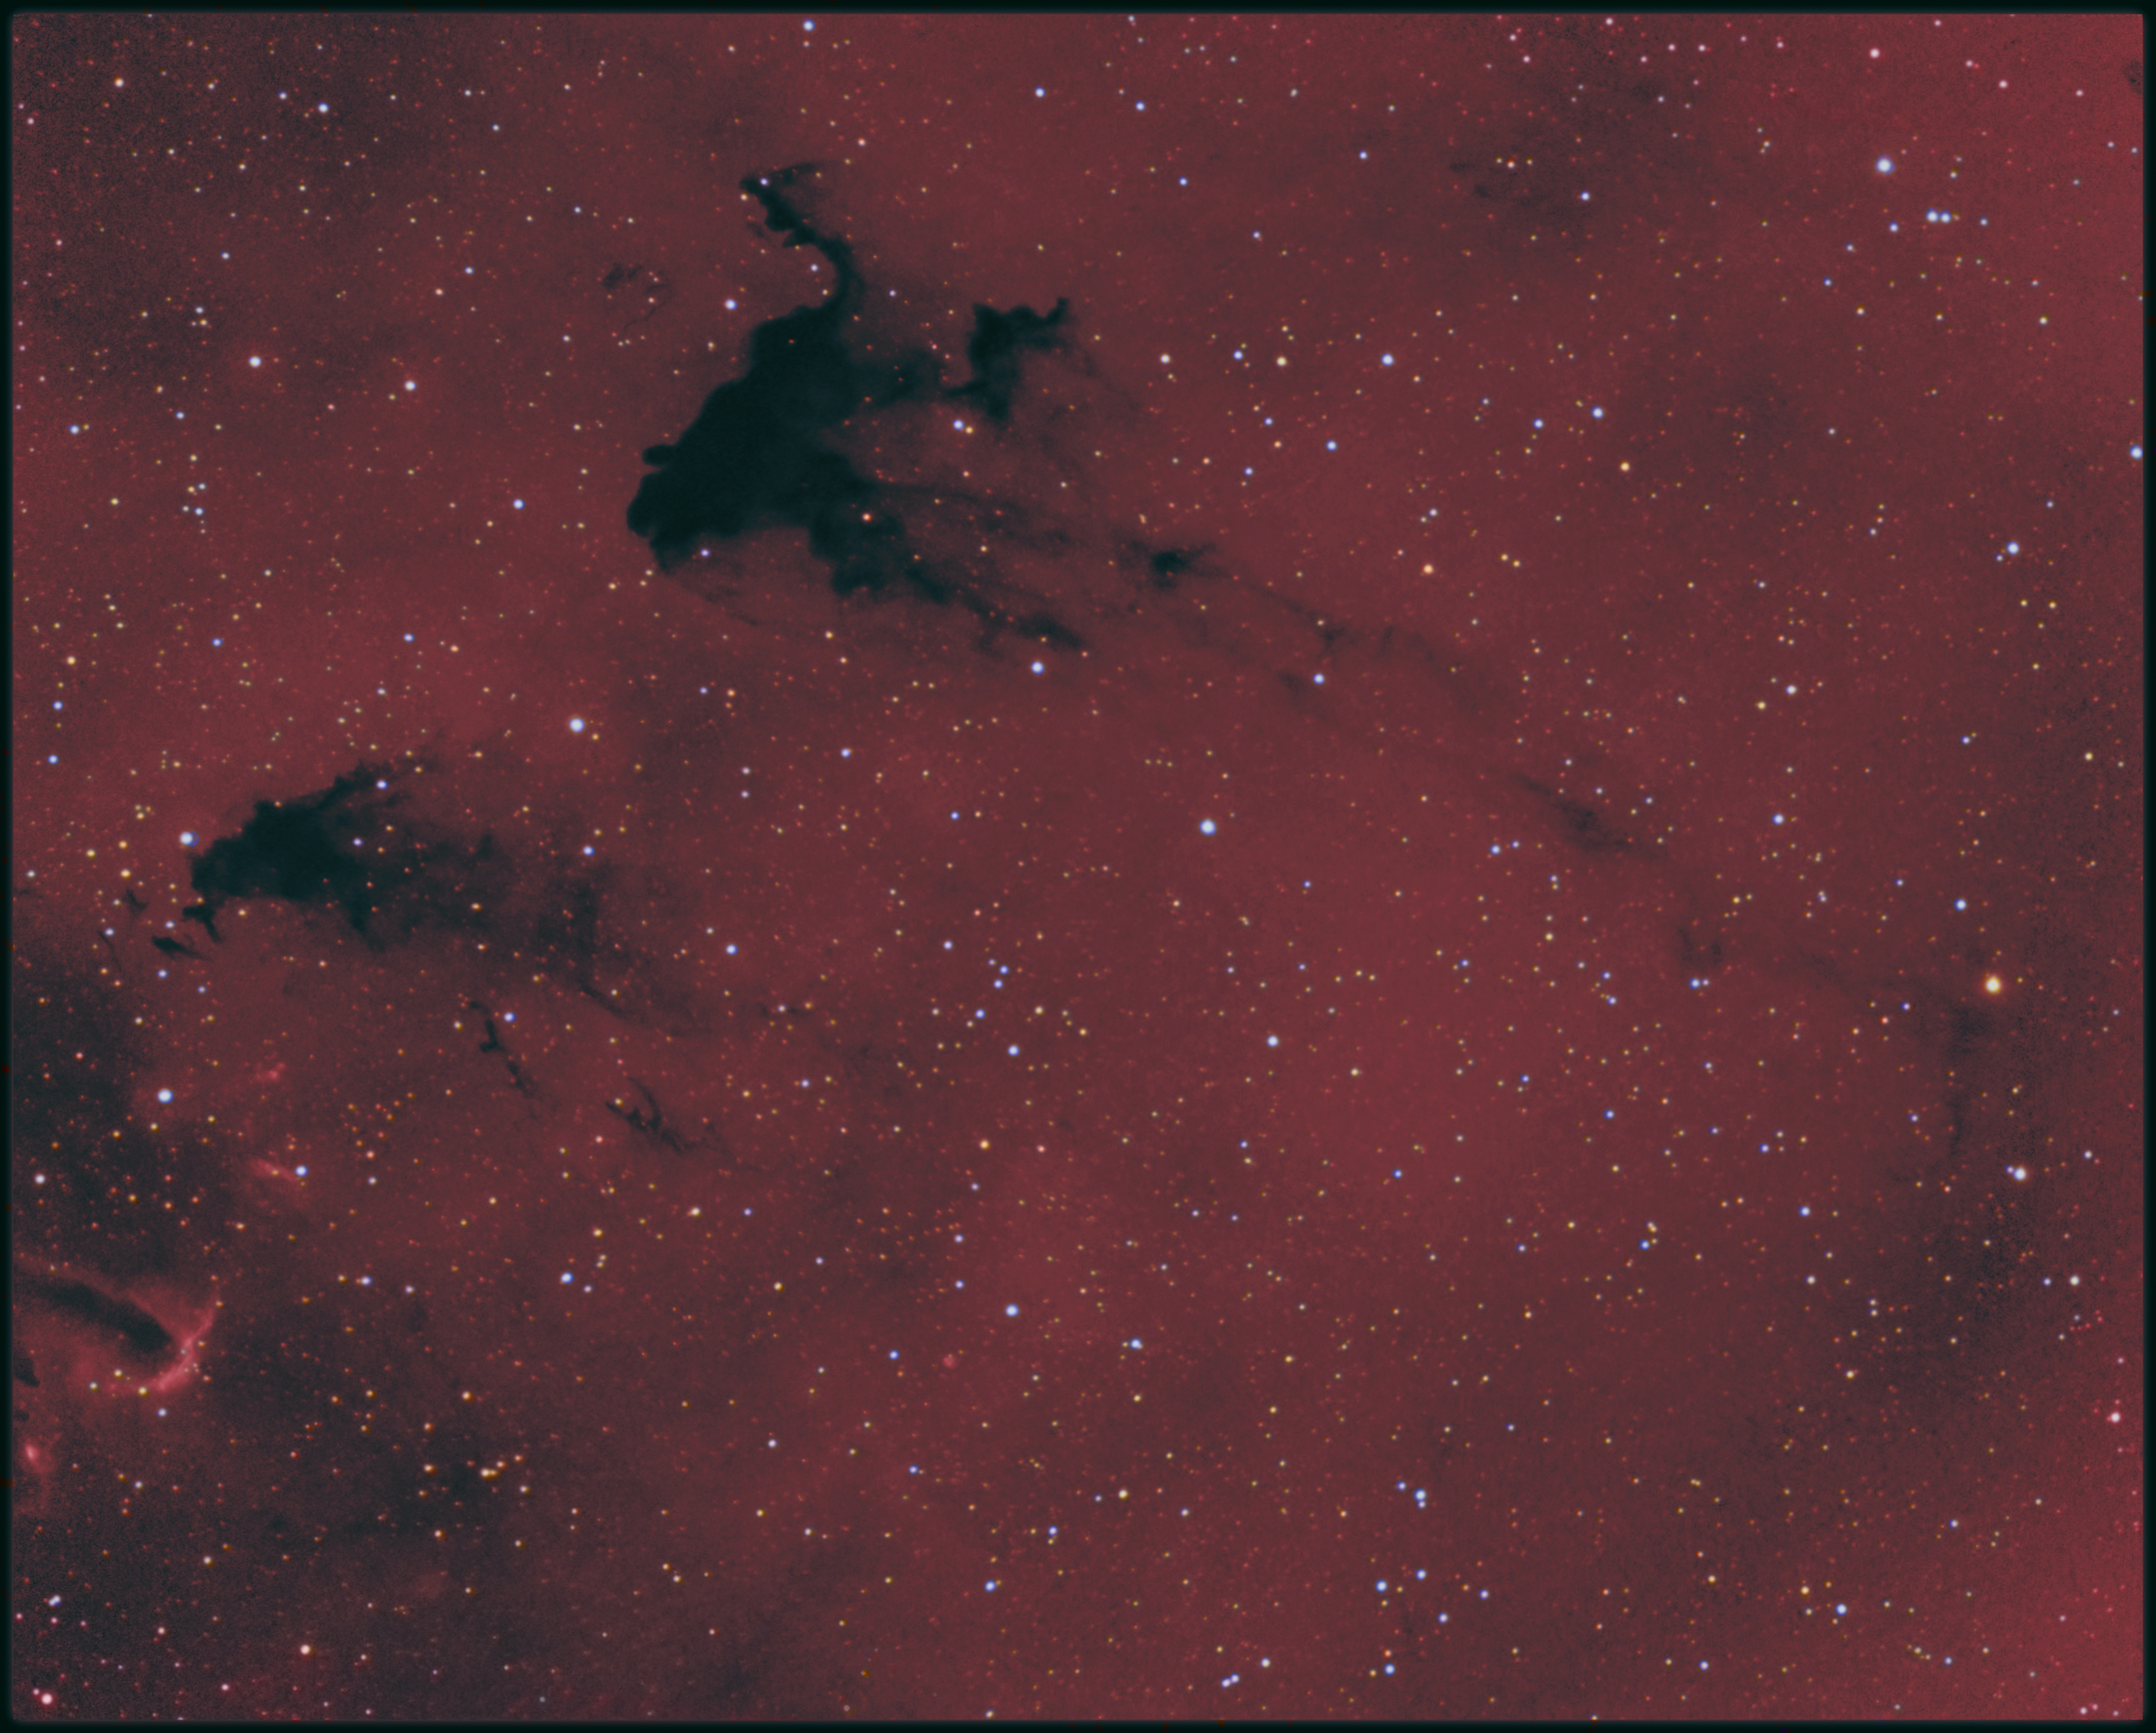 Barnard 163 - The FROG nebula